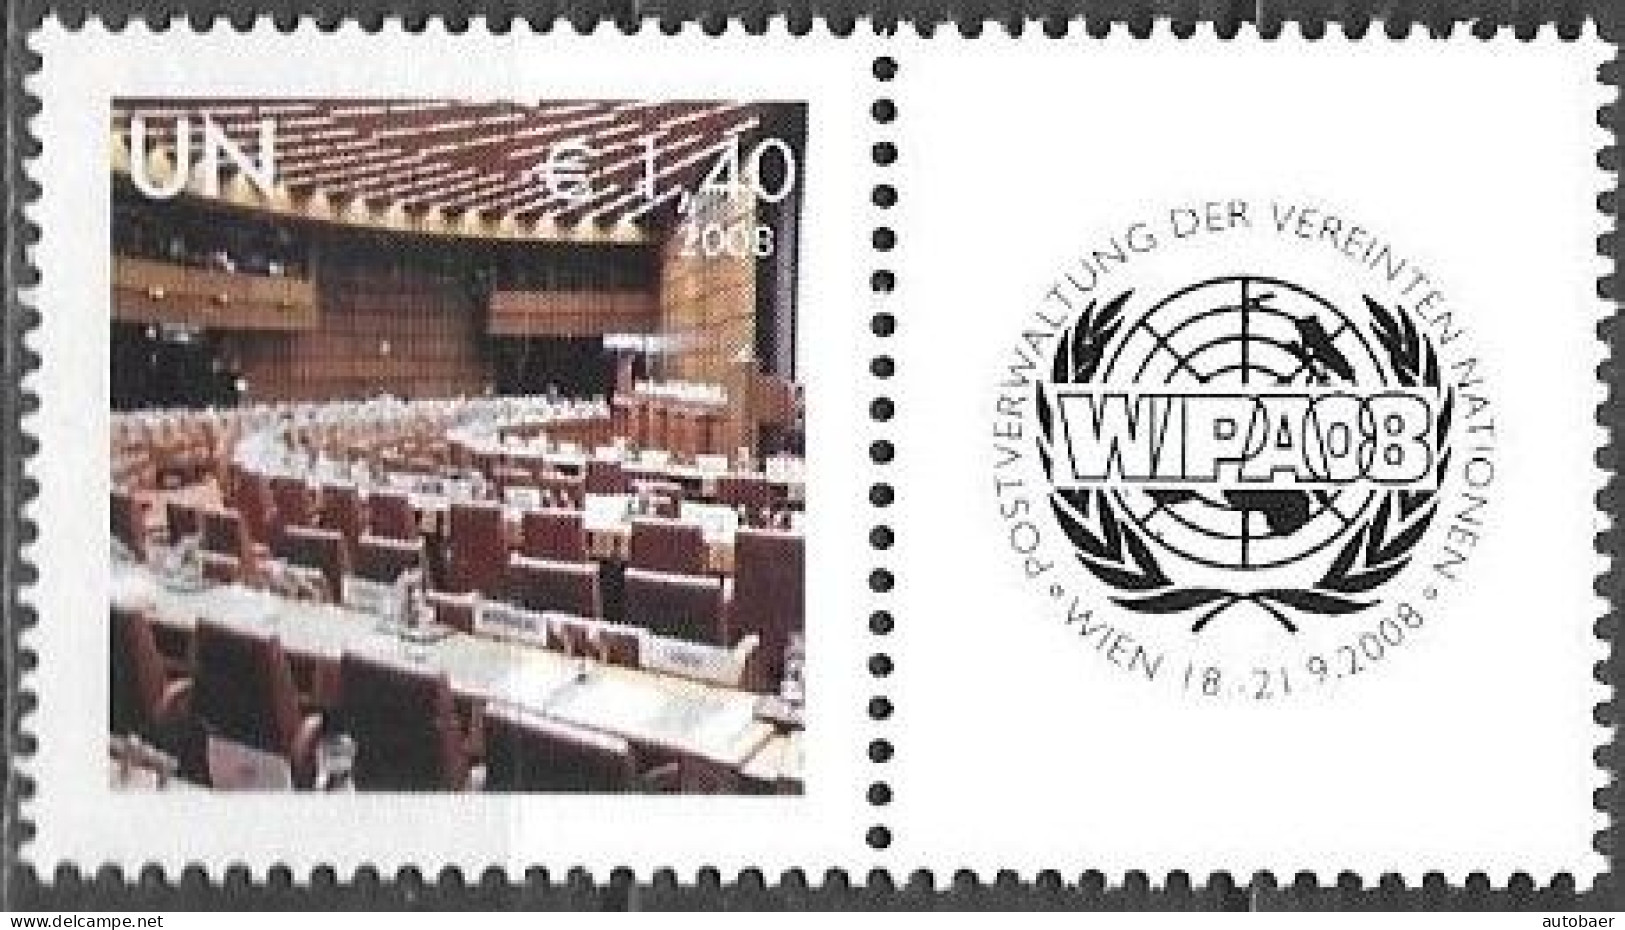 United Nations UNO UN Vereinte Nationen Vienna Wien 2008 Stamp Exhibition WIPA Briefmarken Ausstellung Mi. 554 MNH ** - Neufs